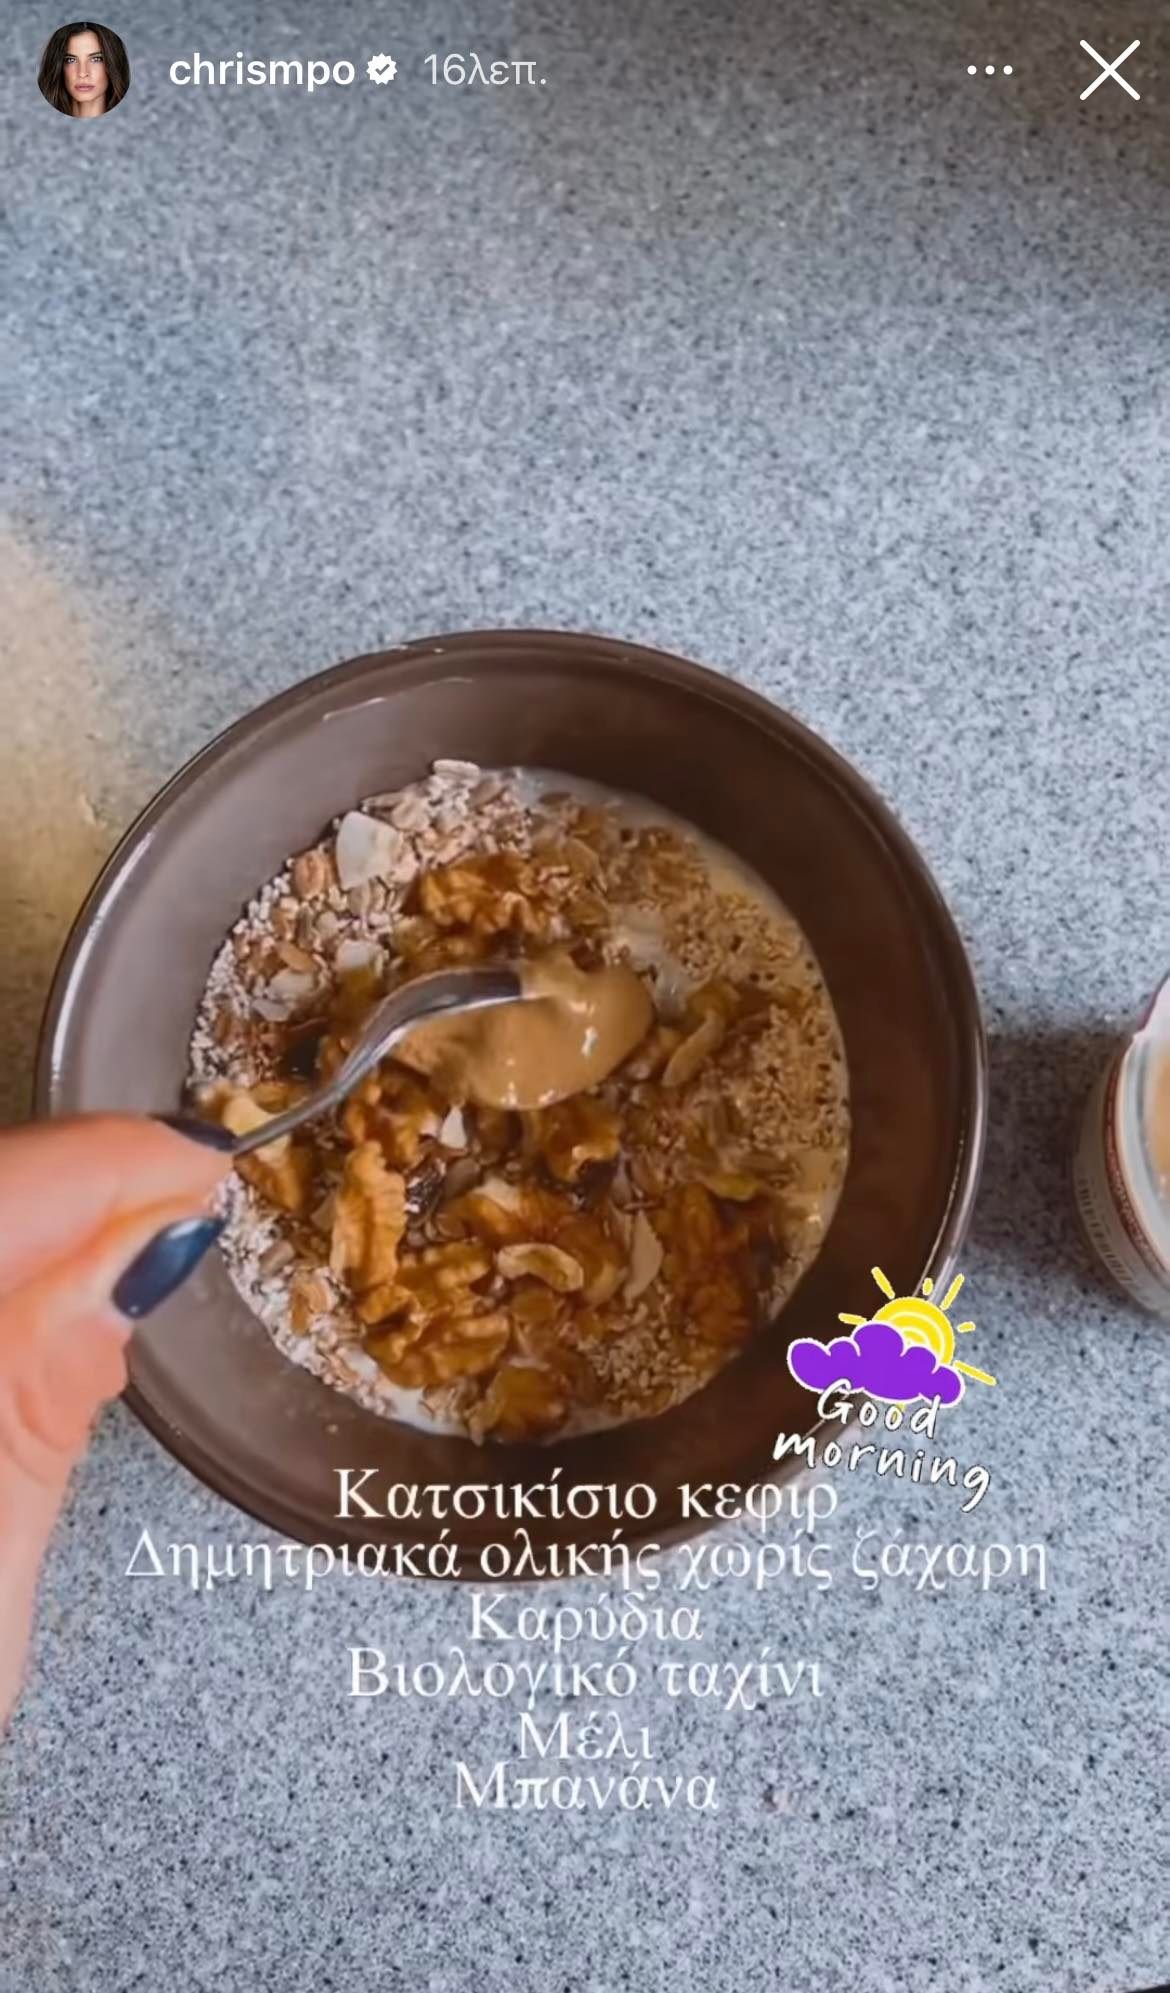 Χριστίνα Μπόμπα: Το υγιεινό Super Bowl που τρώει για πρωινό! Τι περιλαμβάνει;